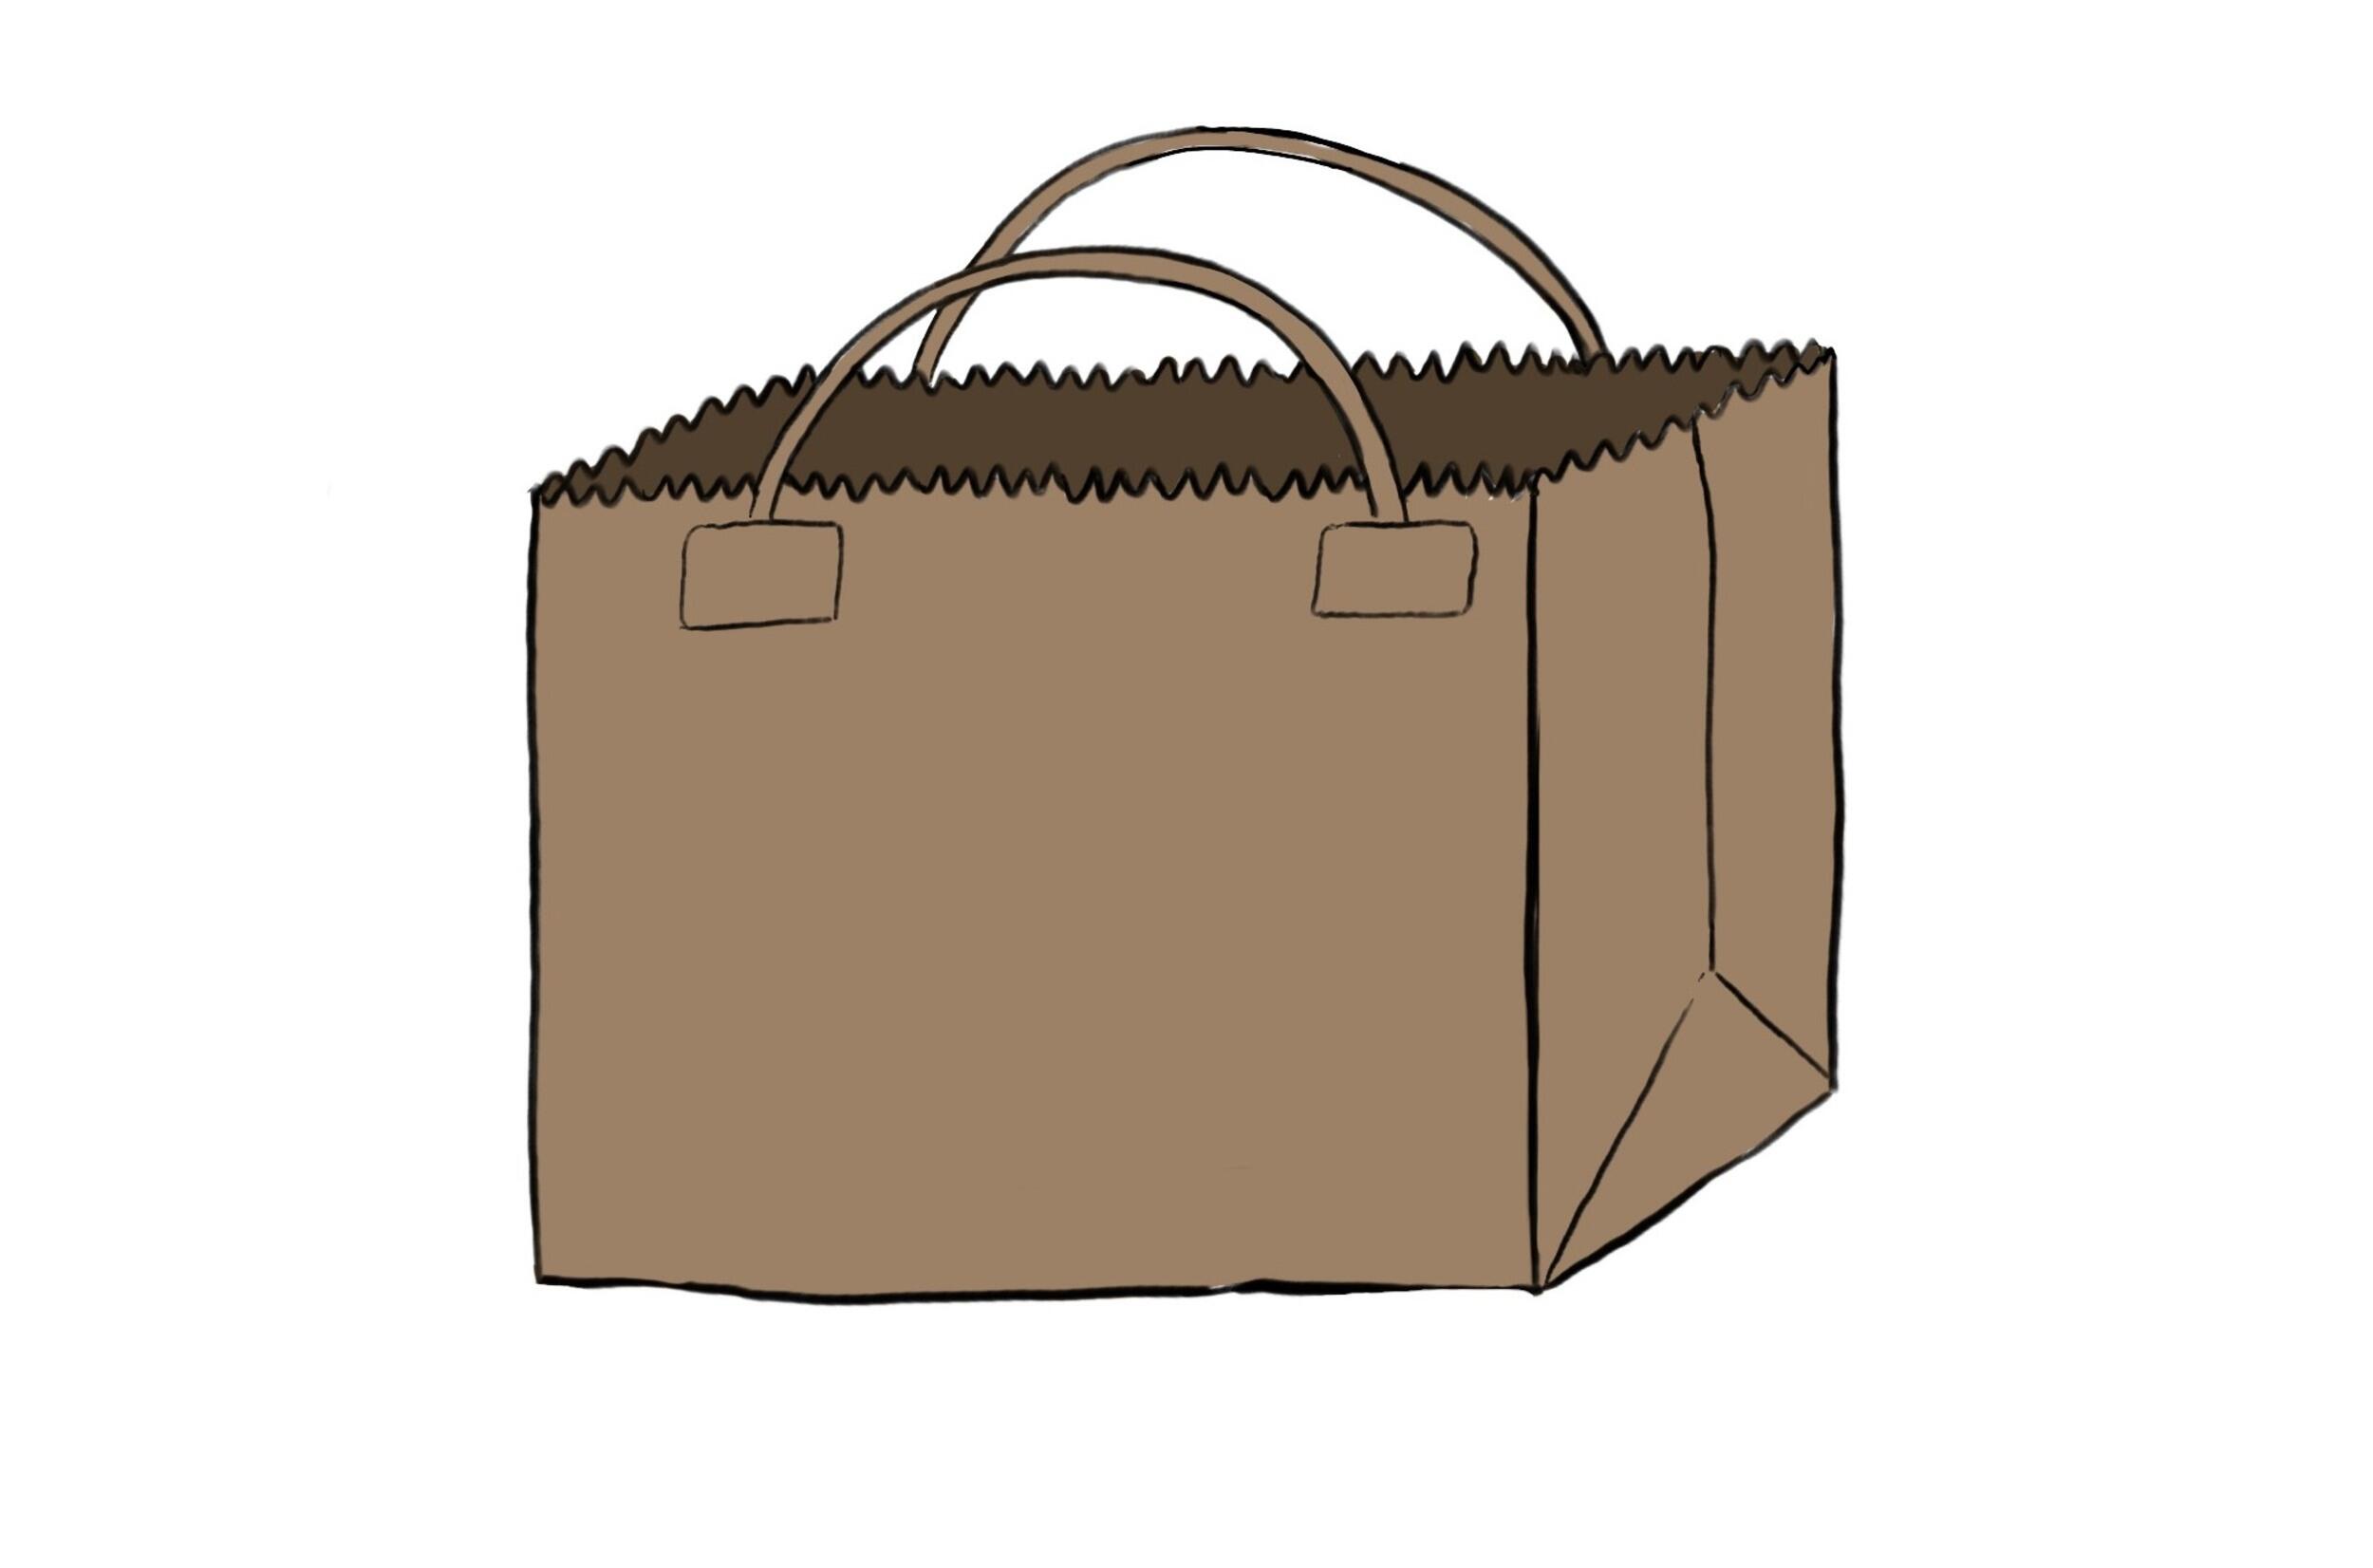  Ilustración de una bolsa de papel marrón 